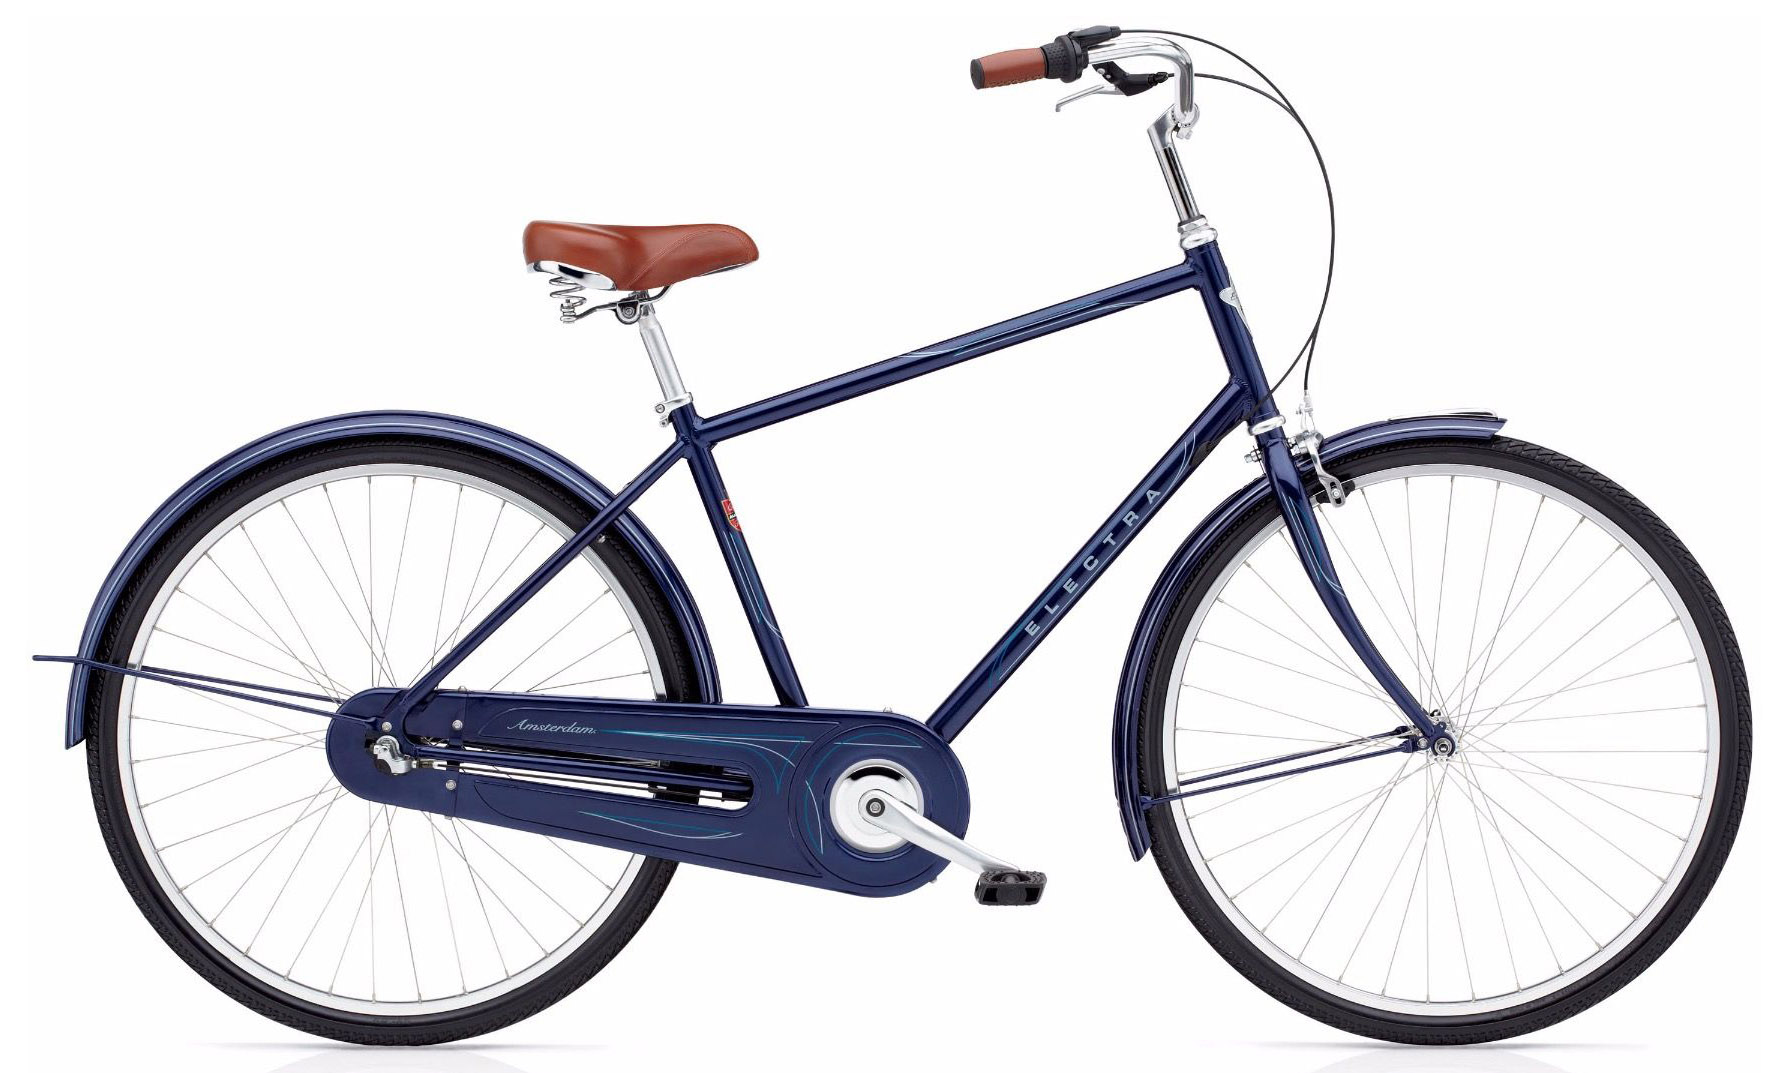  Отзывы о Городском велосипеде Electra Amsterdam Original 3i Mens 2020